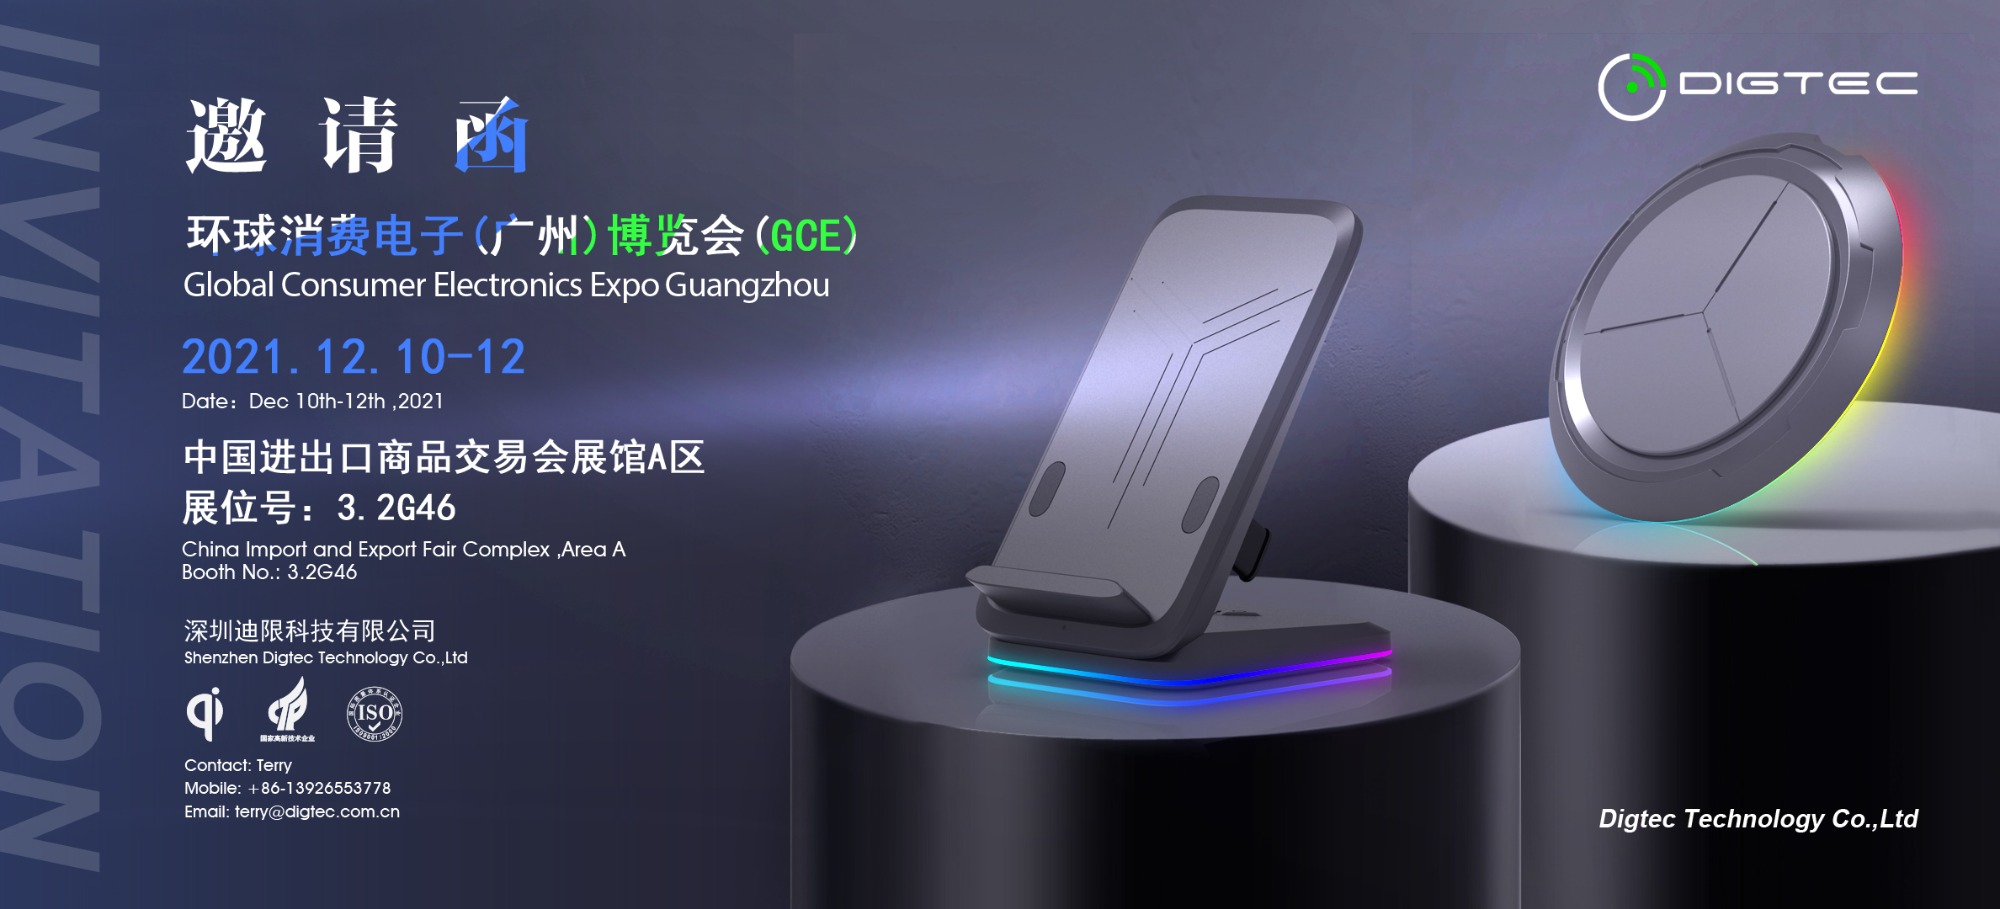 Global Consumer Electronics Expo Guangzhou 2021